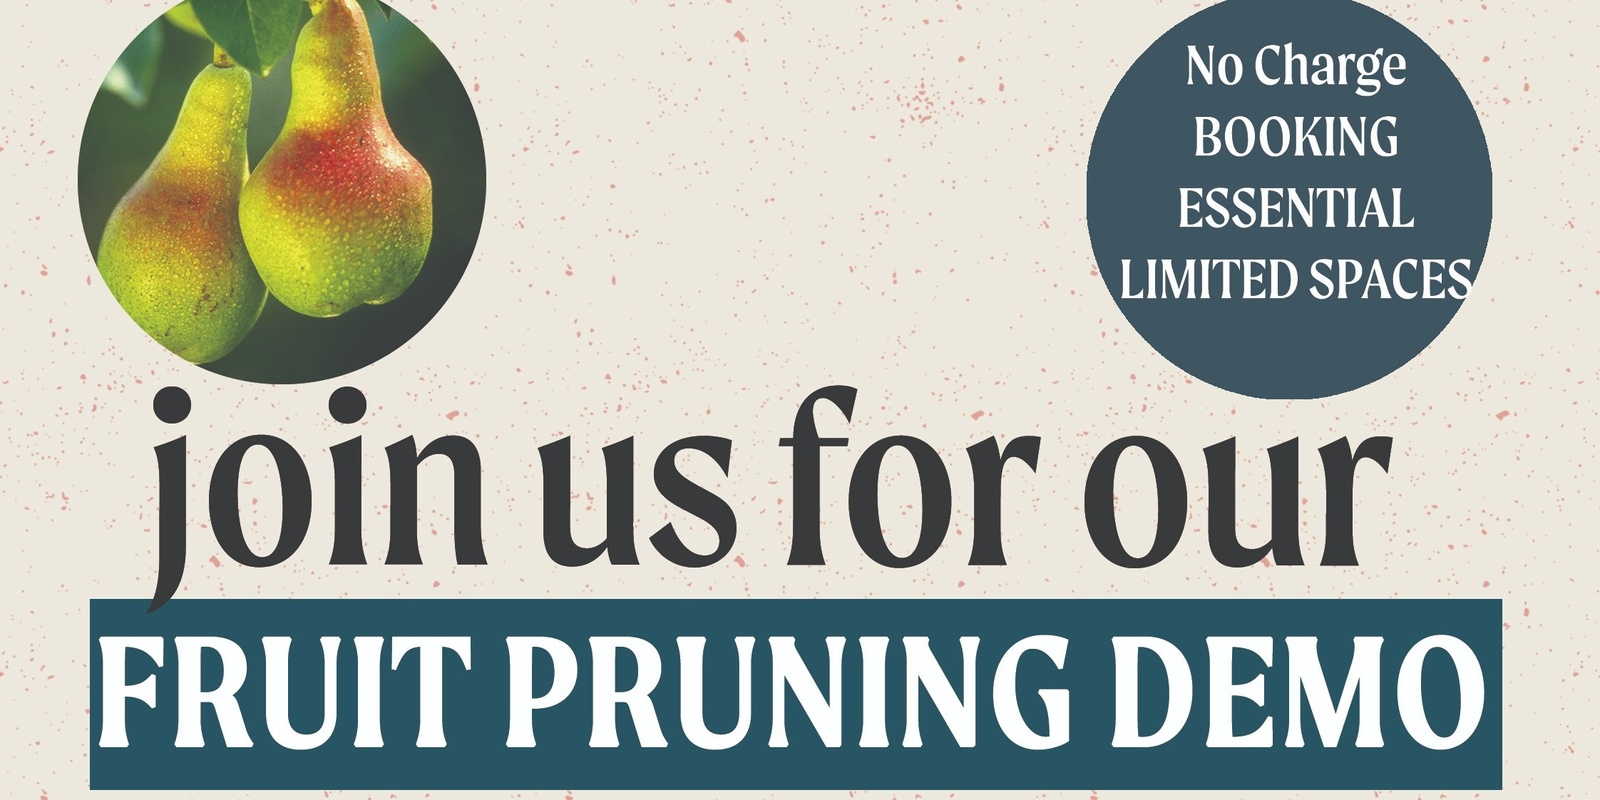 Banner image for Fruit Pruning Demonstration